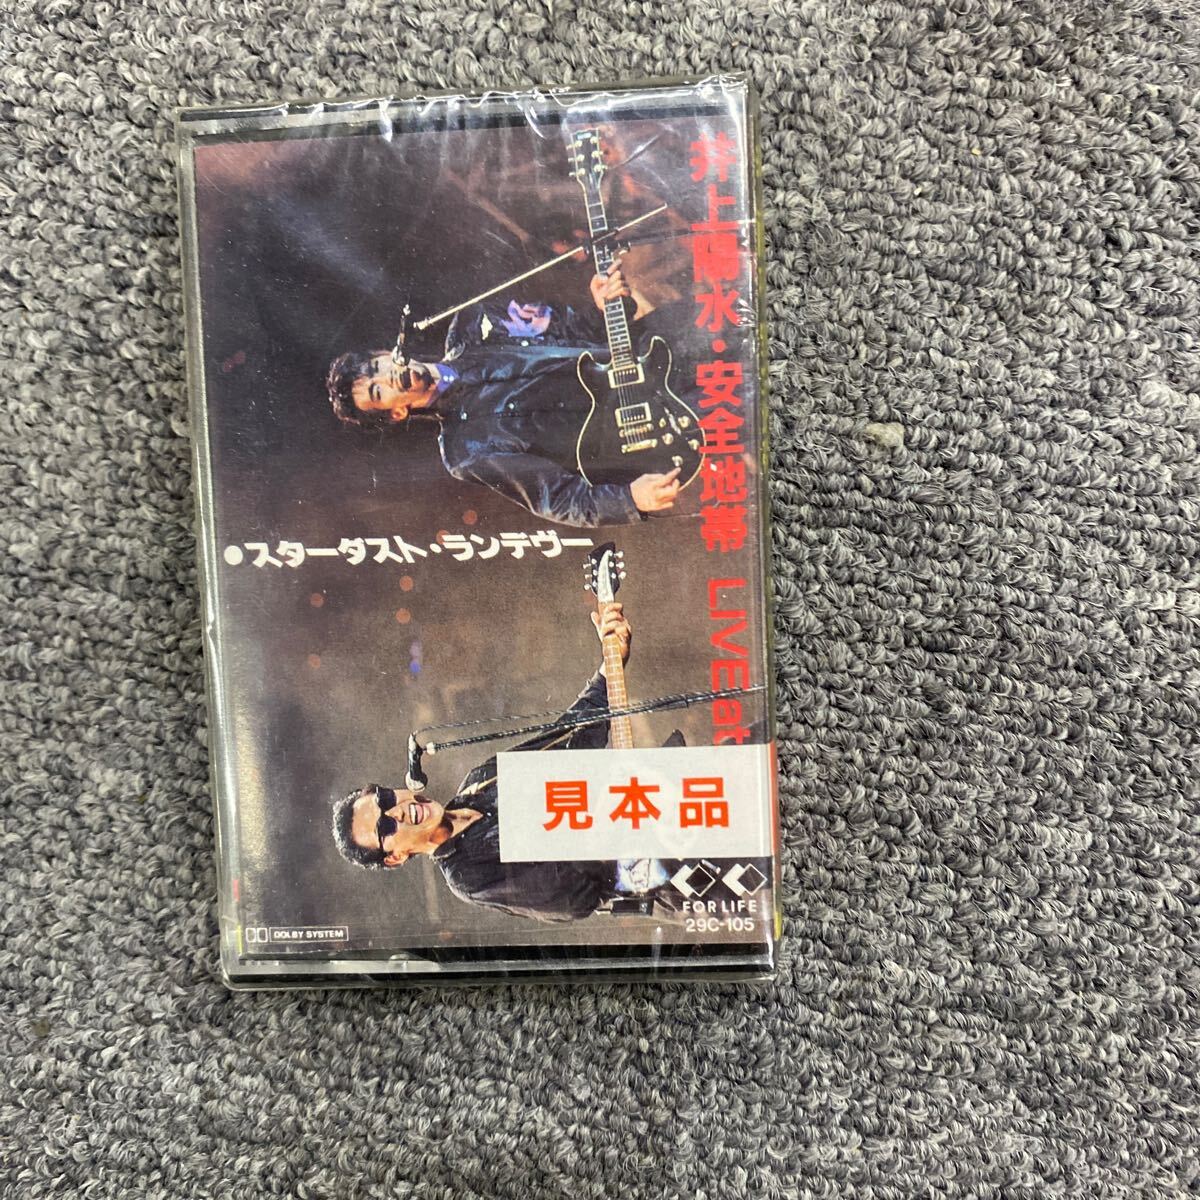 04531 нераспечатанный кассетная лента Star пыль * Ran tevu- Inoue Yosui * зона безопасности LIVE at бог . Inoue Yosui & зона безопасности работоспособность не проверялась 